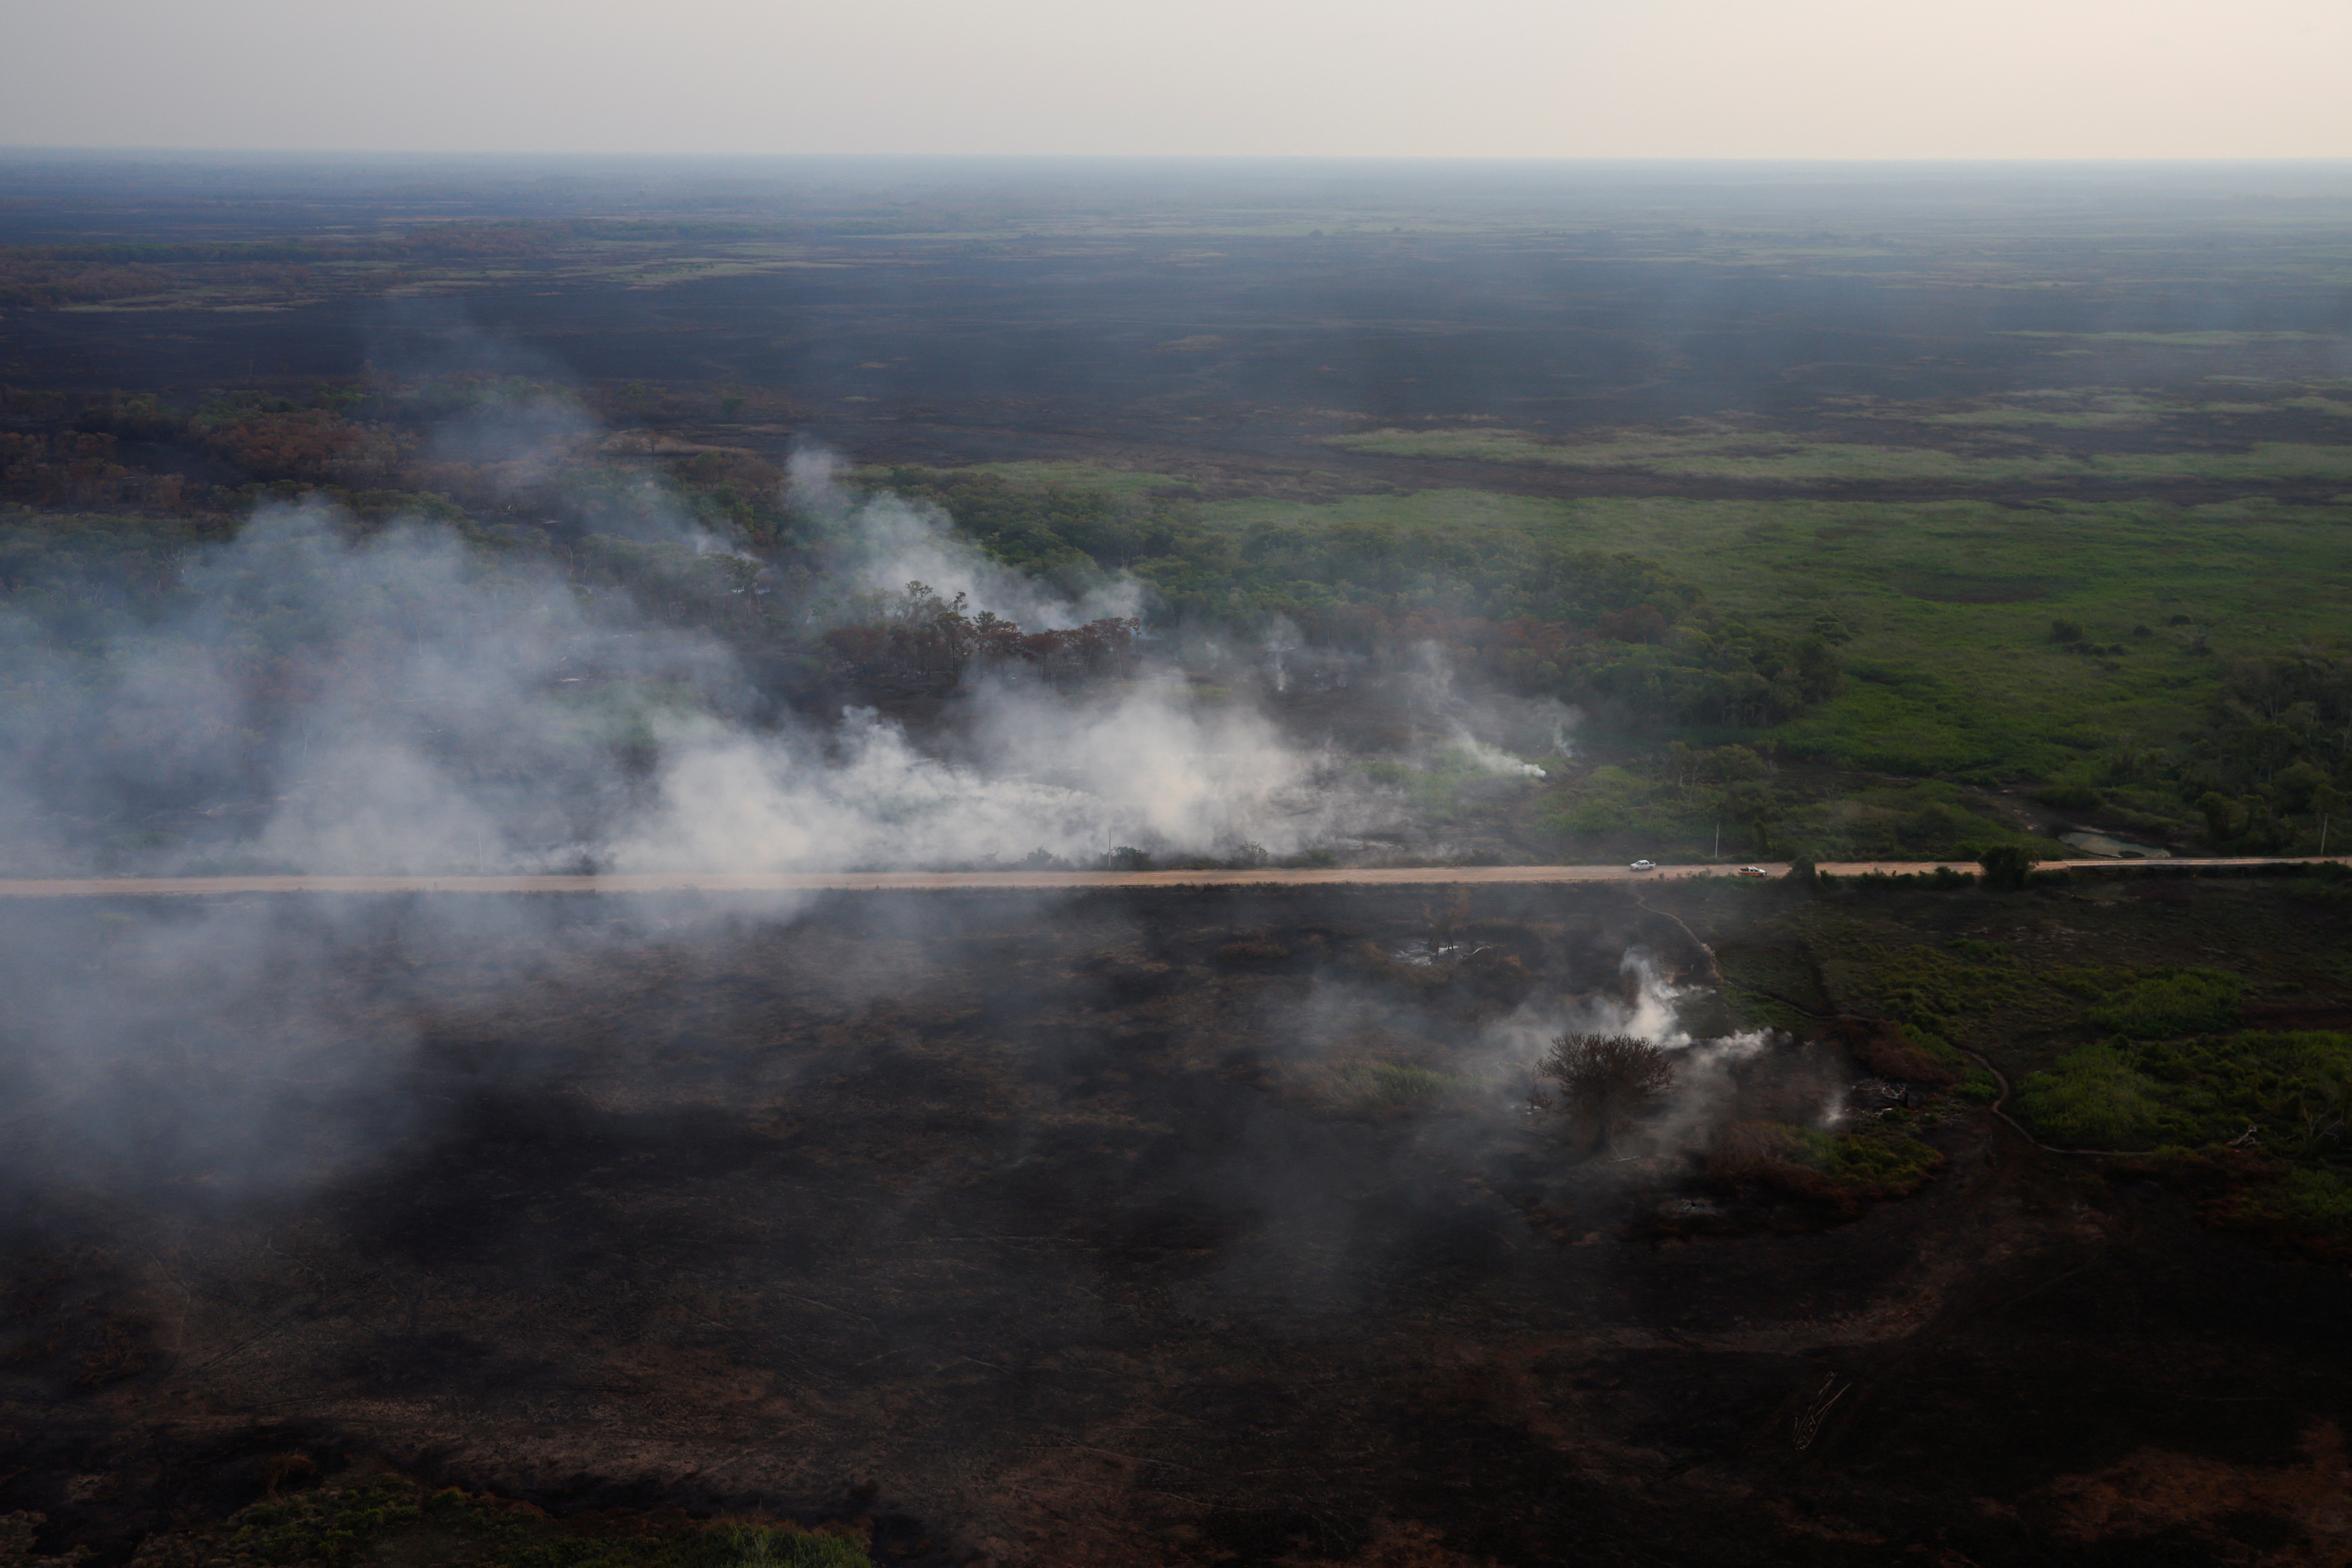 ブラジルの世界最大級湿原、火災が前年比10倍増　乾季控え懸念